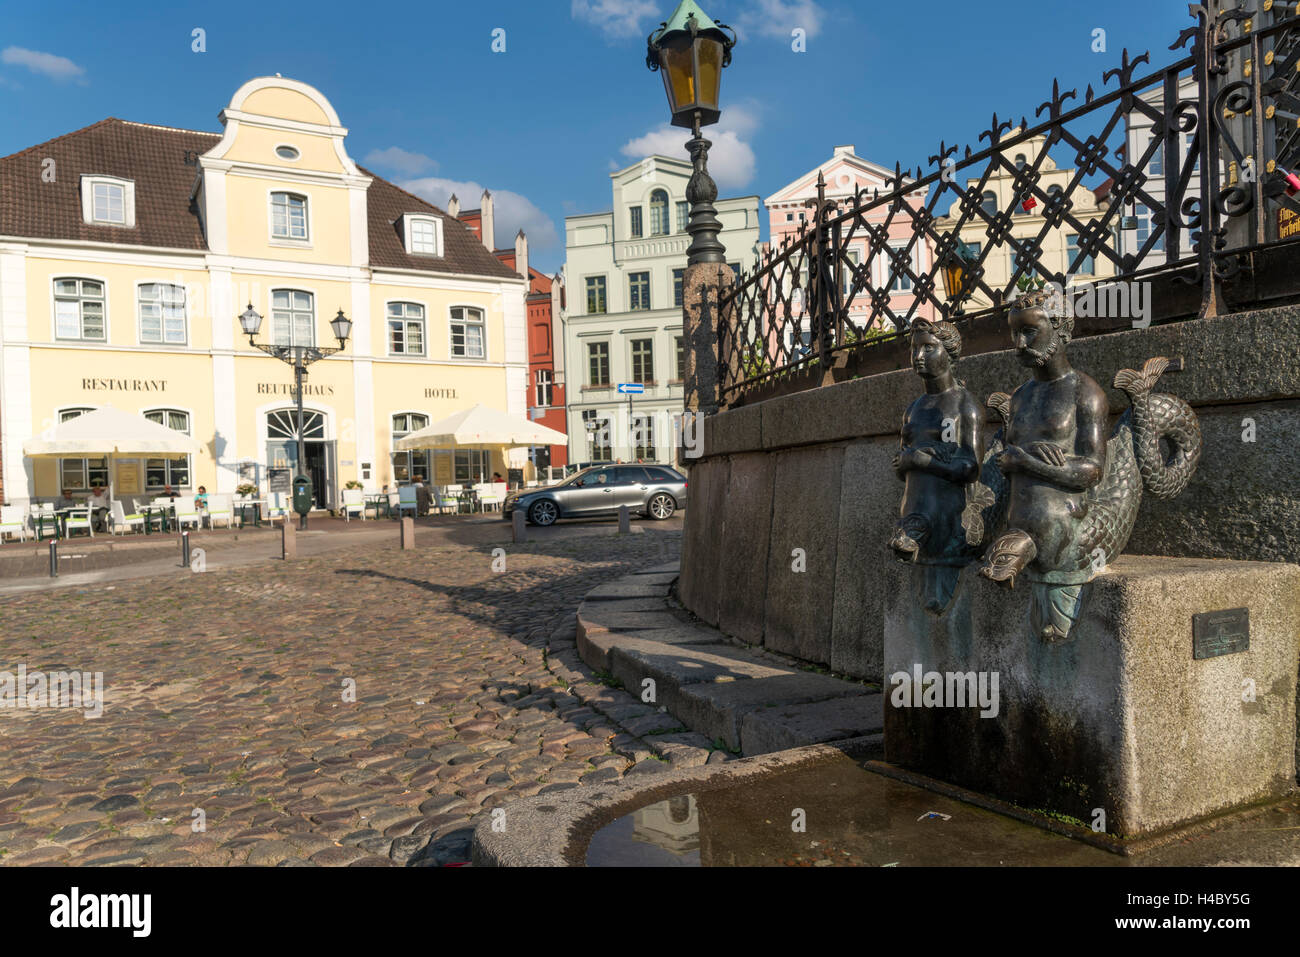 Bronce statue "Nix und Nixe' in corrispondenza del punto di riferimento o di acquedotto Wasserkunst, città anseatica di Wismar, Meclemburgo-Pomerania, Germa Foto Stock